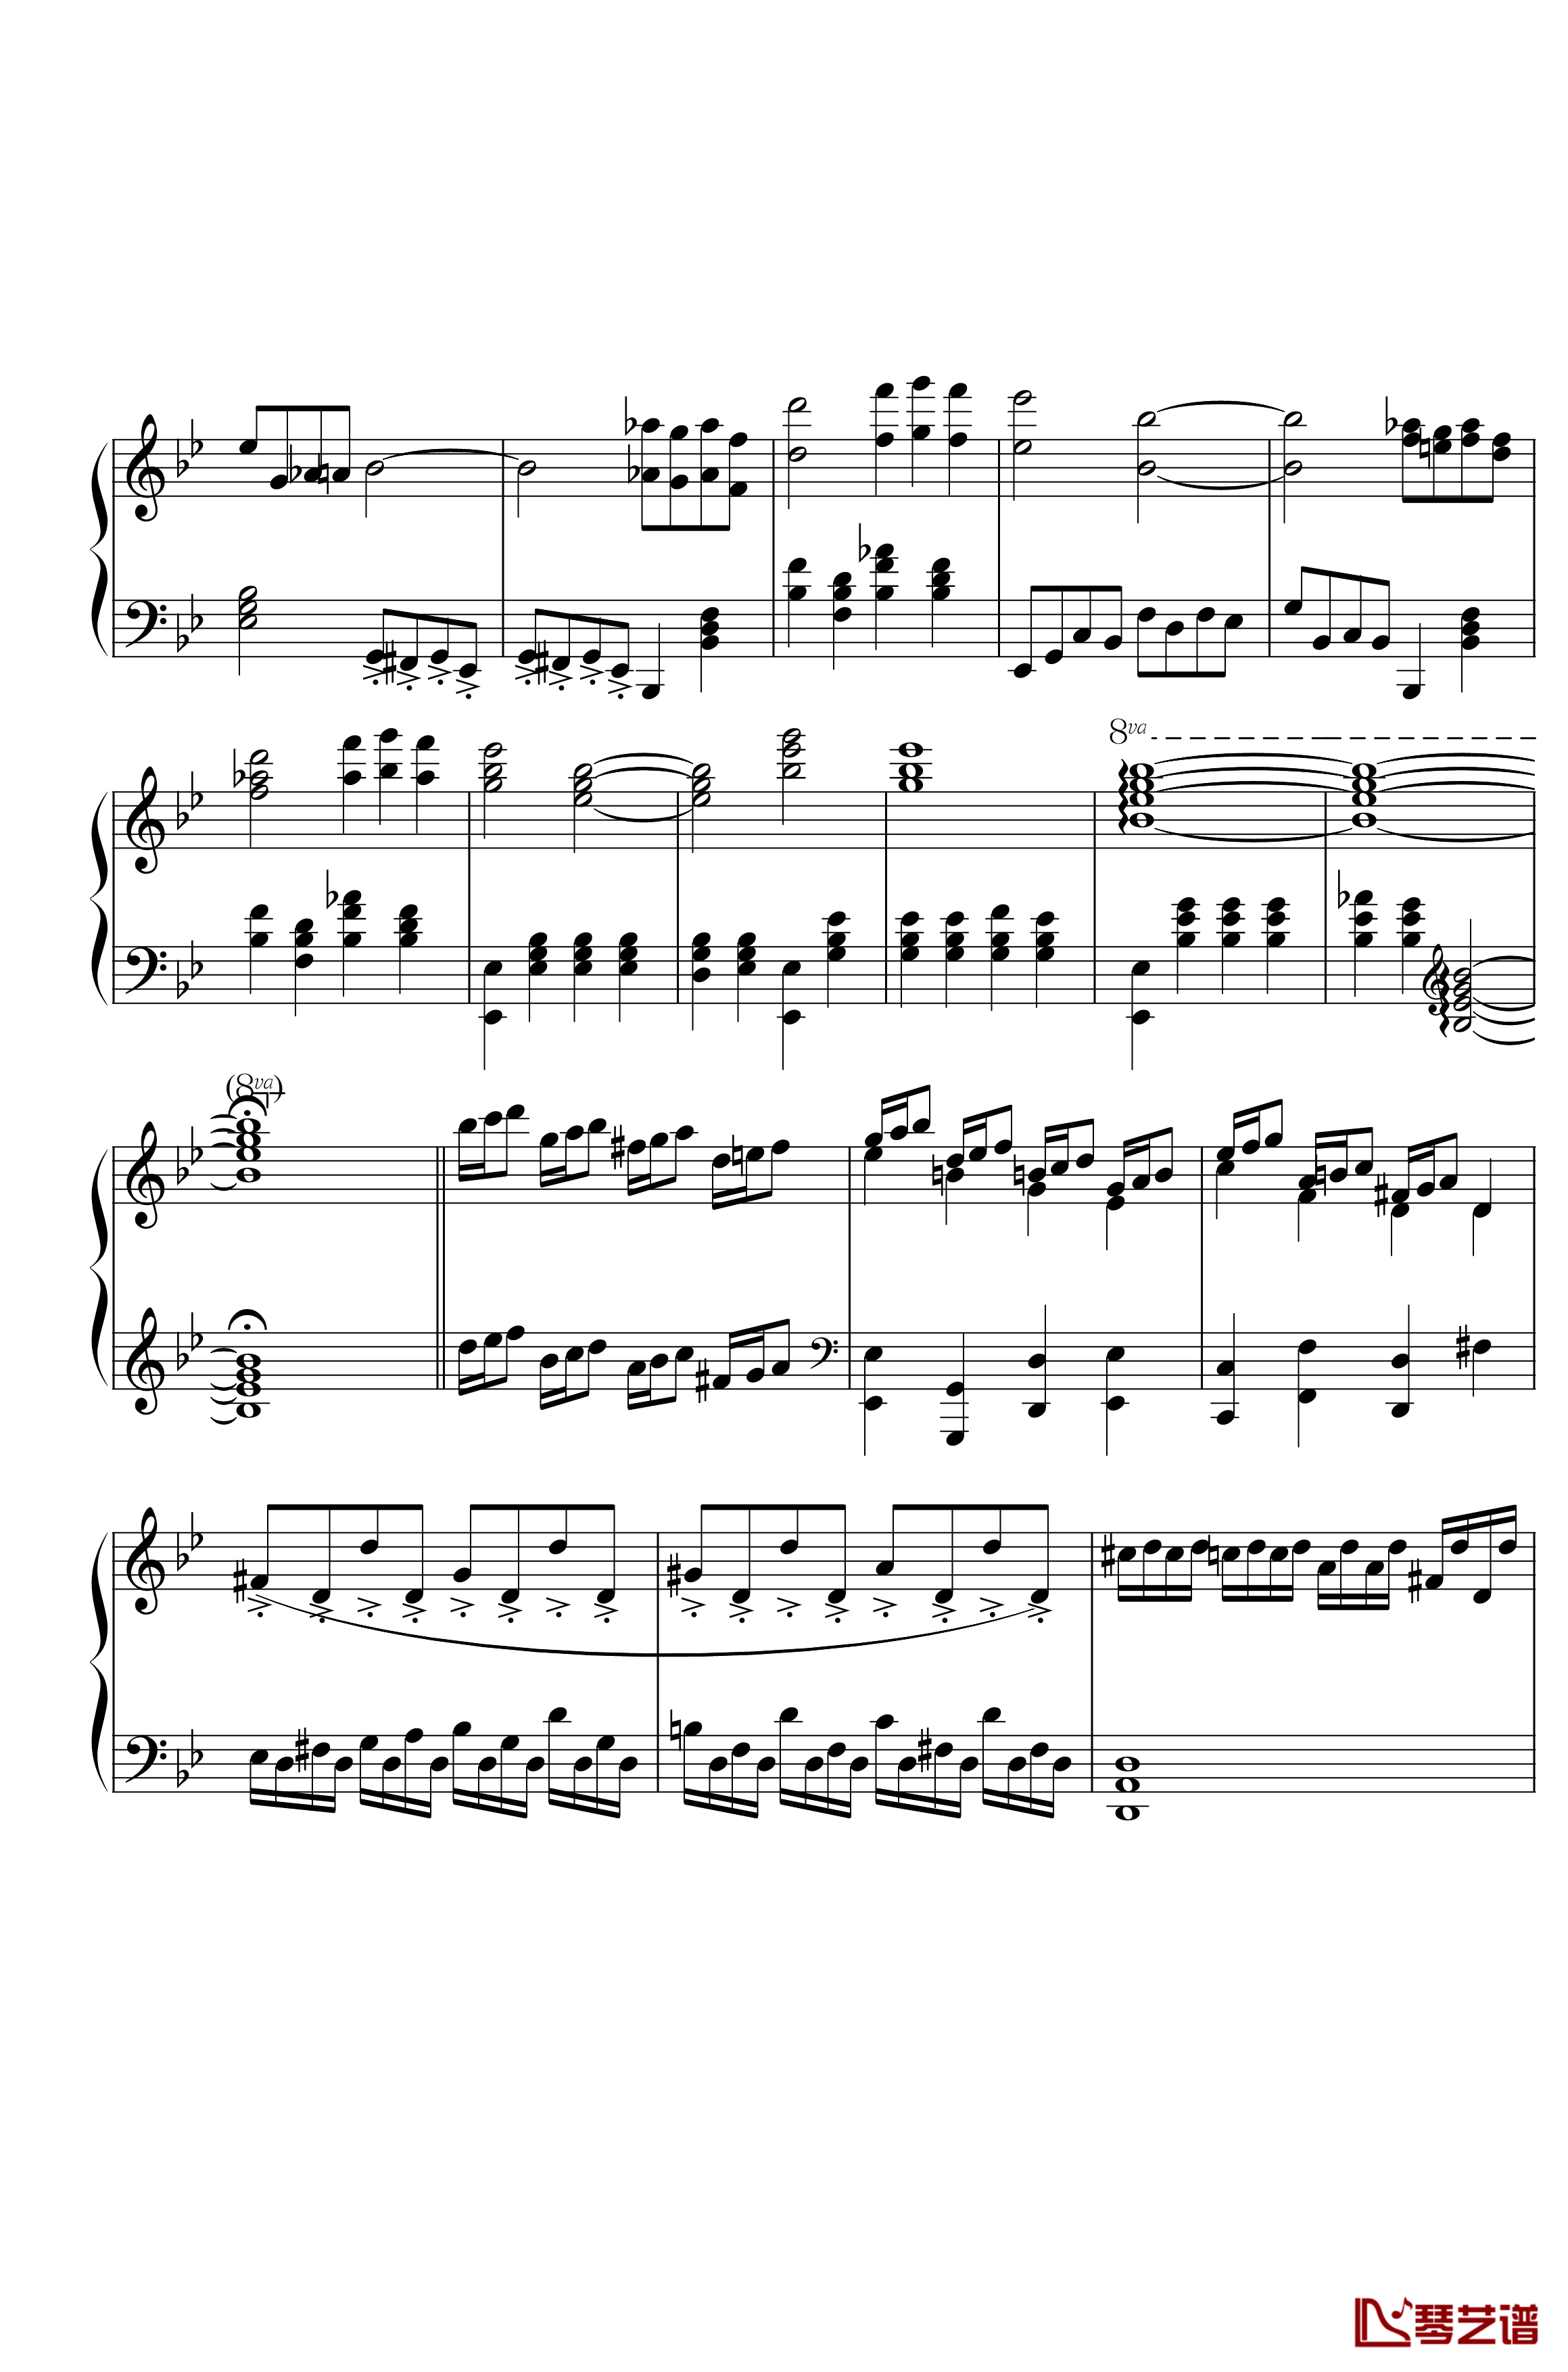 第三钢琴奏鸣曲第一乐章钢琴谱-nzh19344